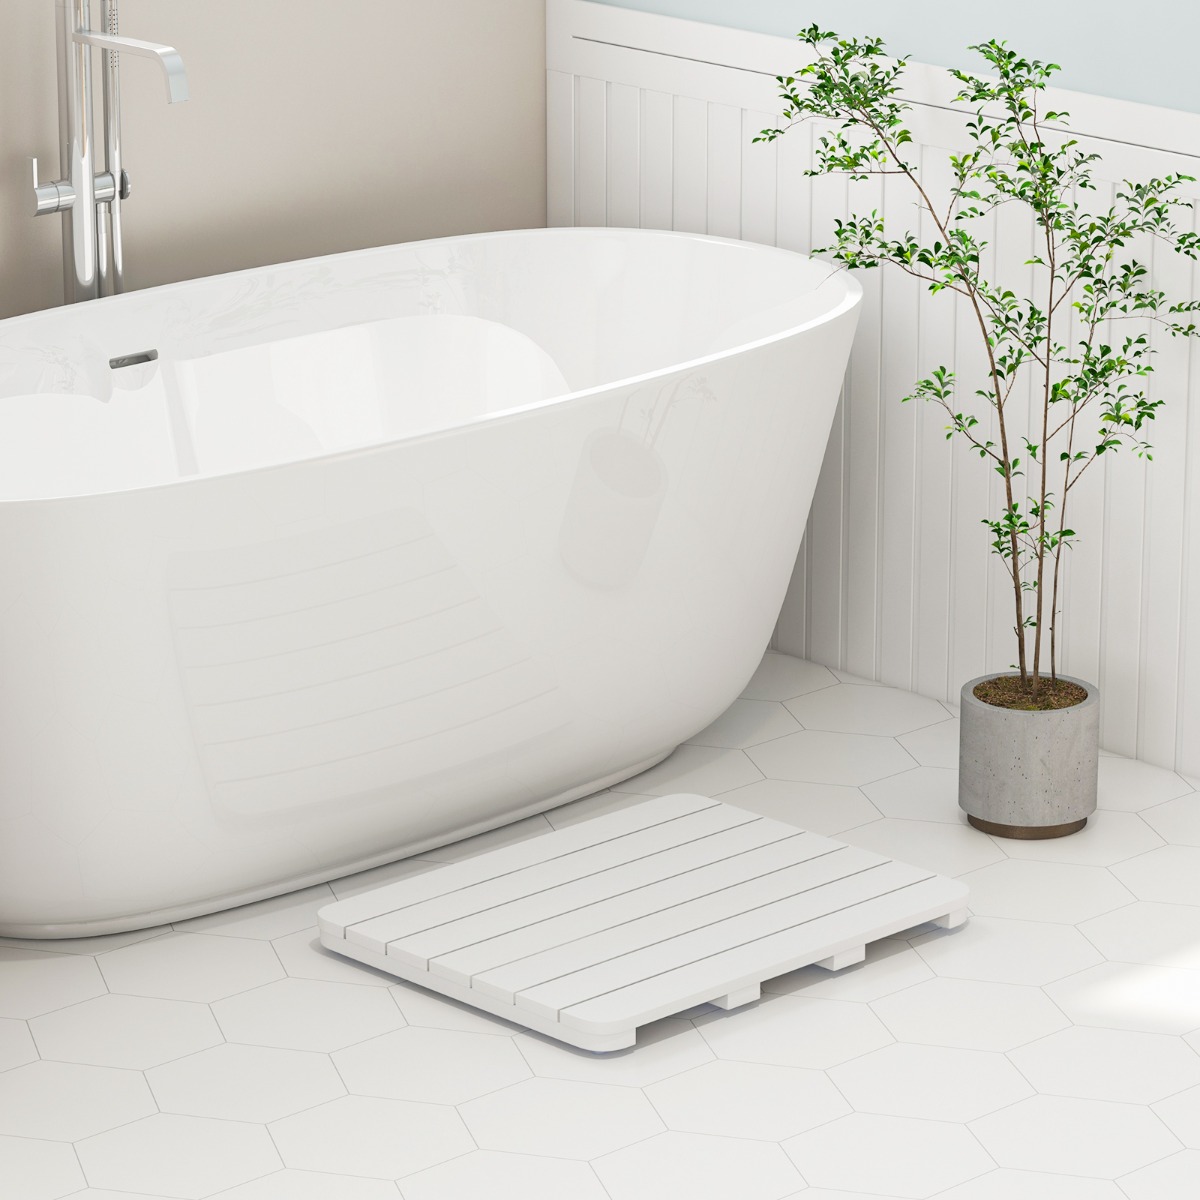 60 x 48 cm Toilettenmatte aus Hips Holz-Design Badematte bis 150kg Belastbar Badvorleger Weiß